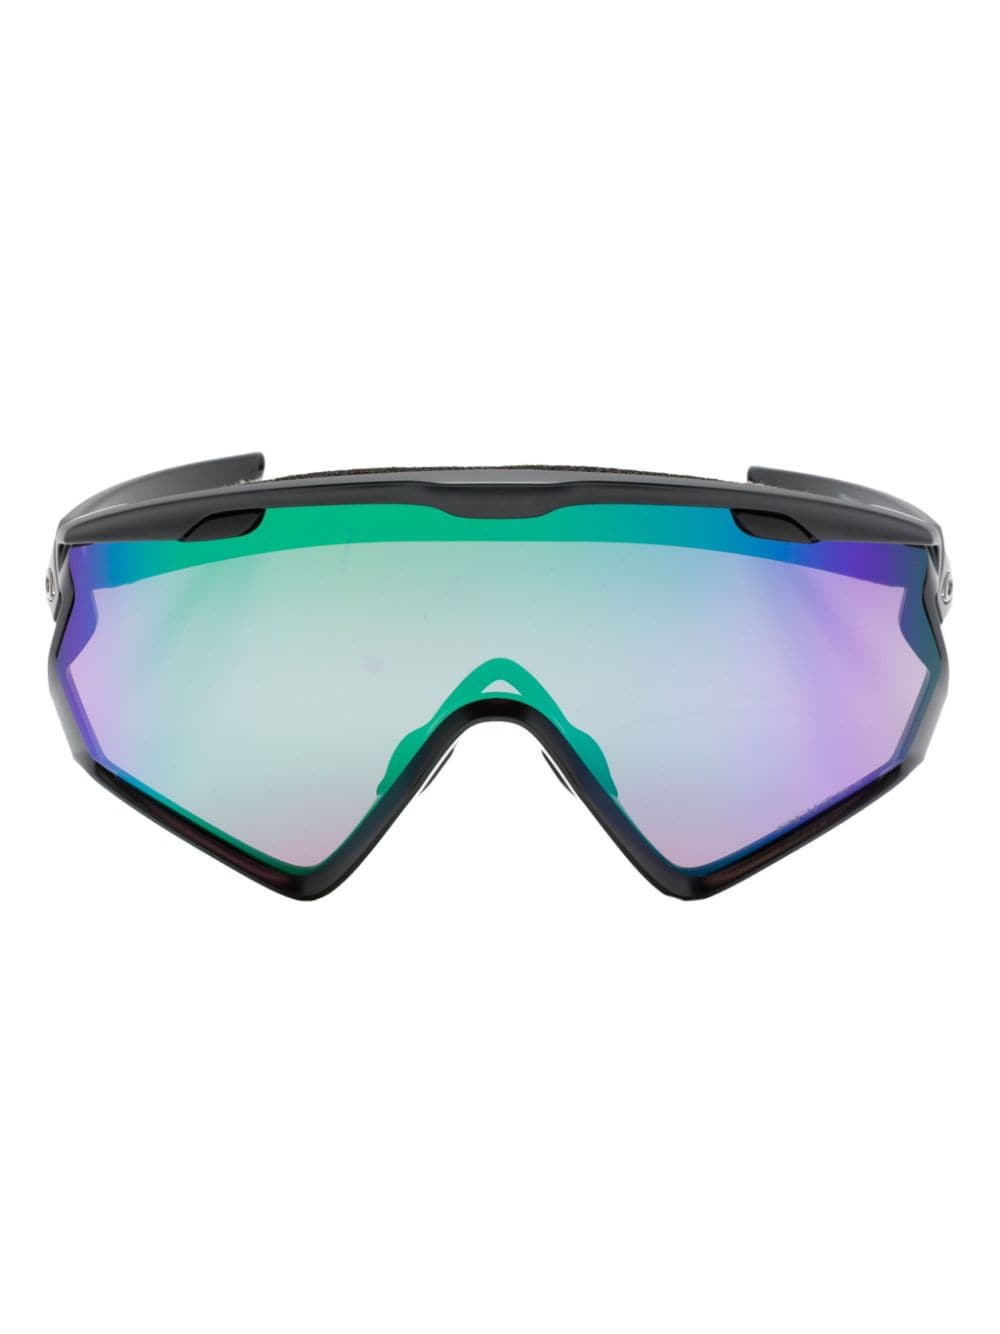 Wind Jacket 2.0 shield-frame sunglasses<BR/><BR/><BR/>